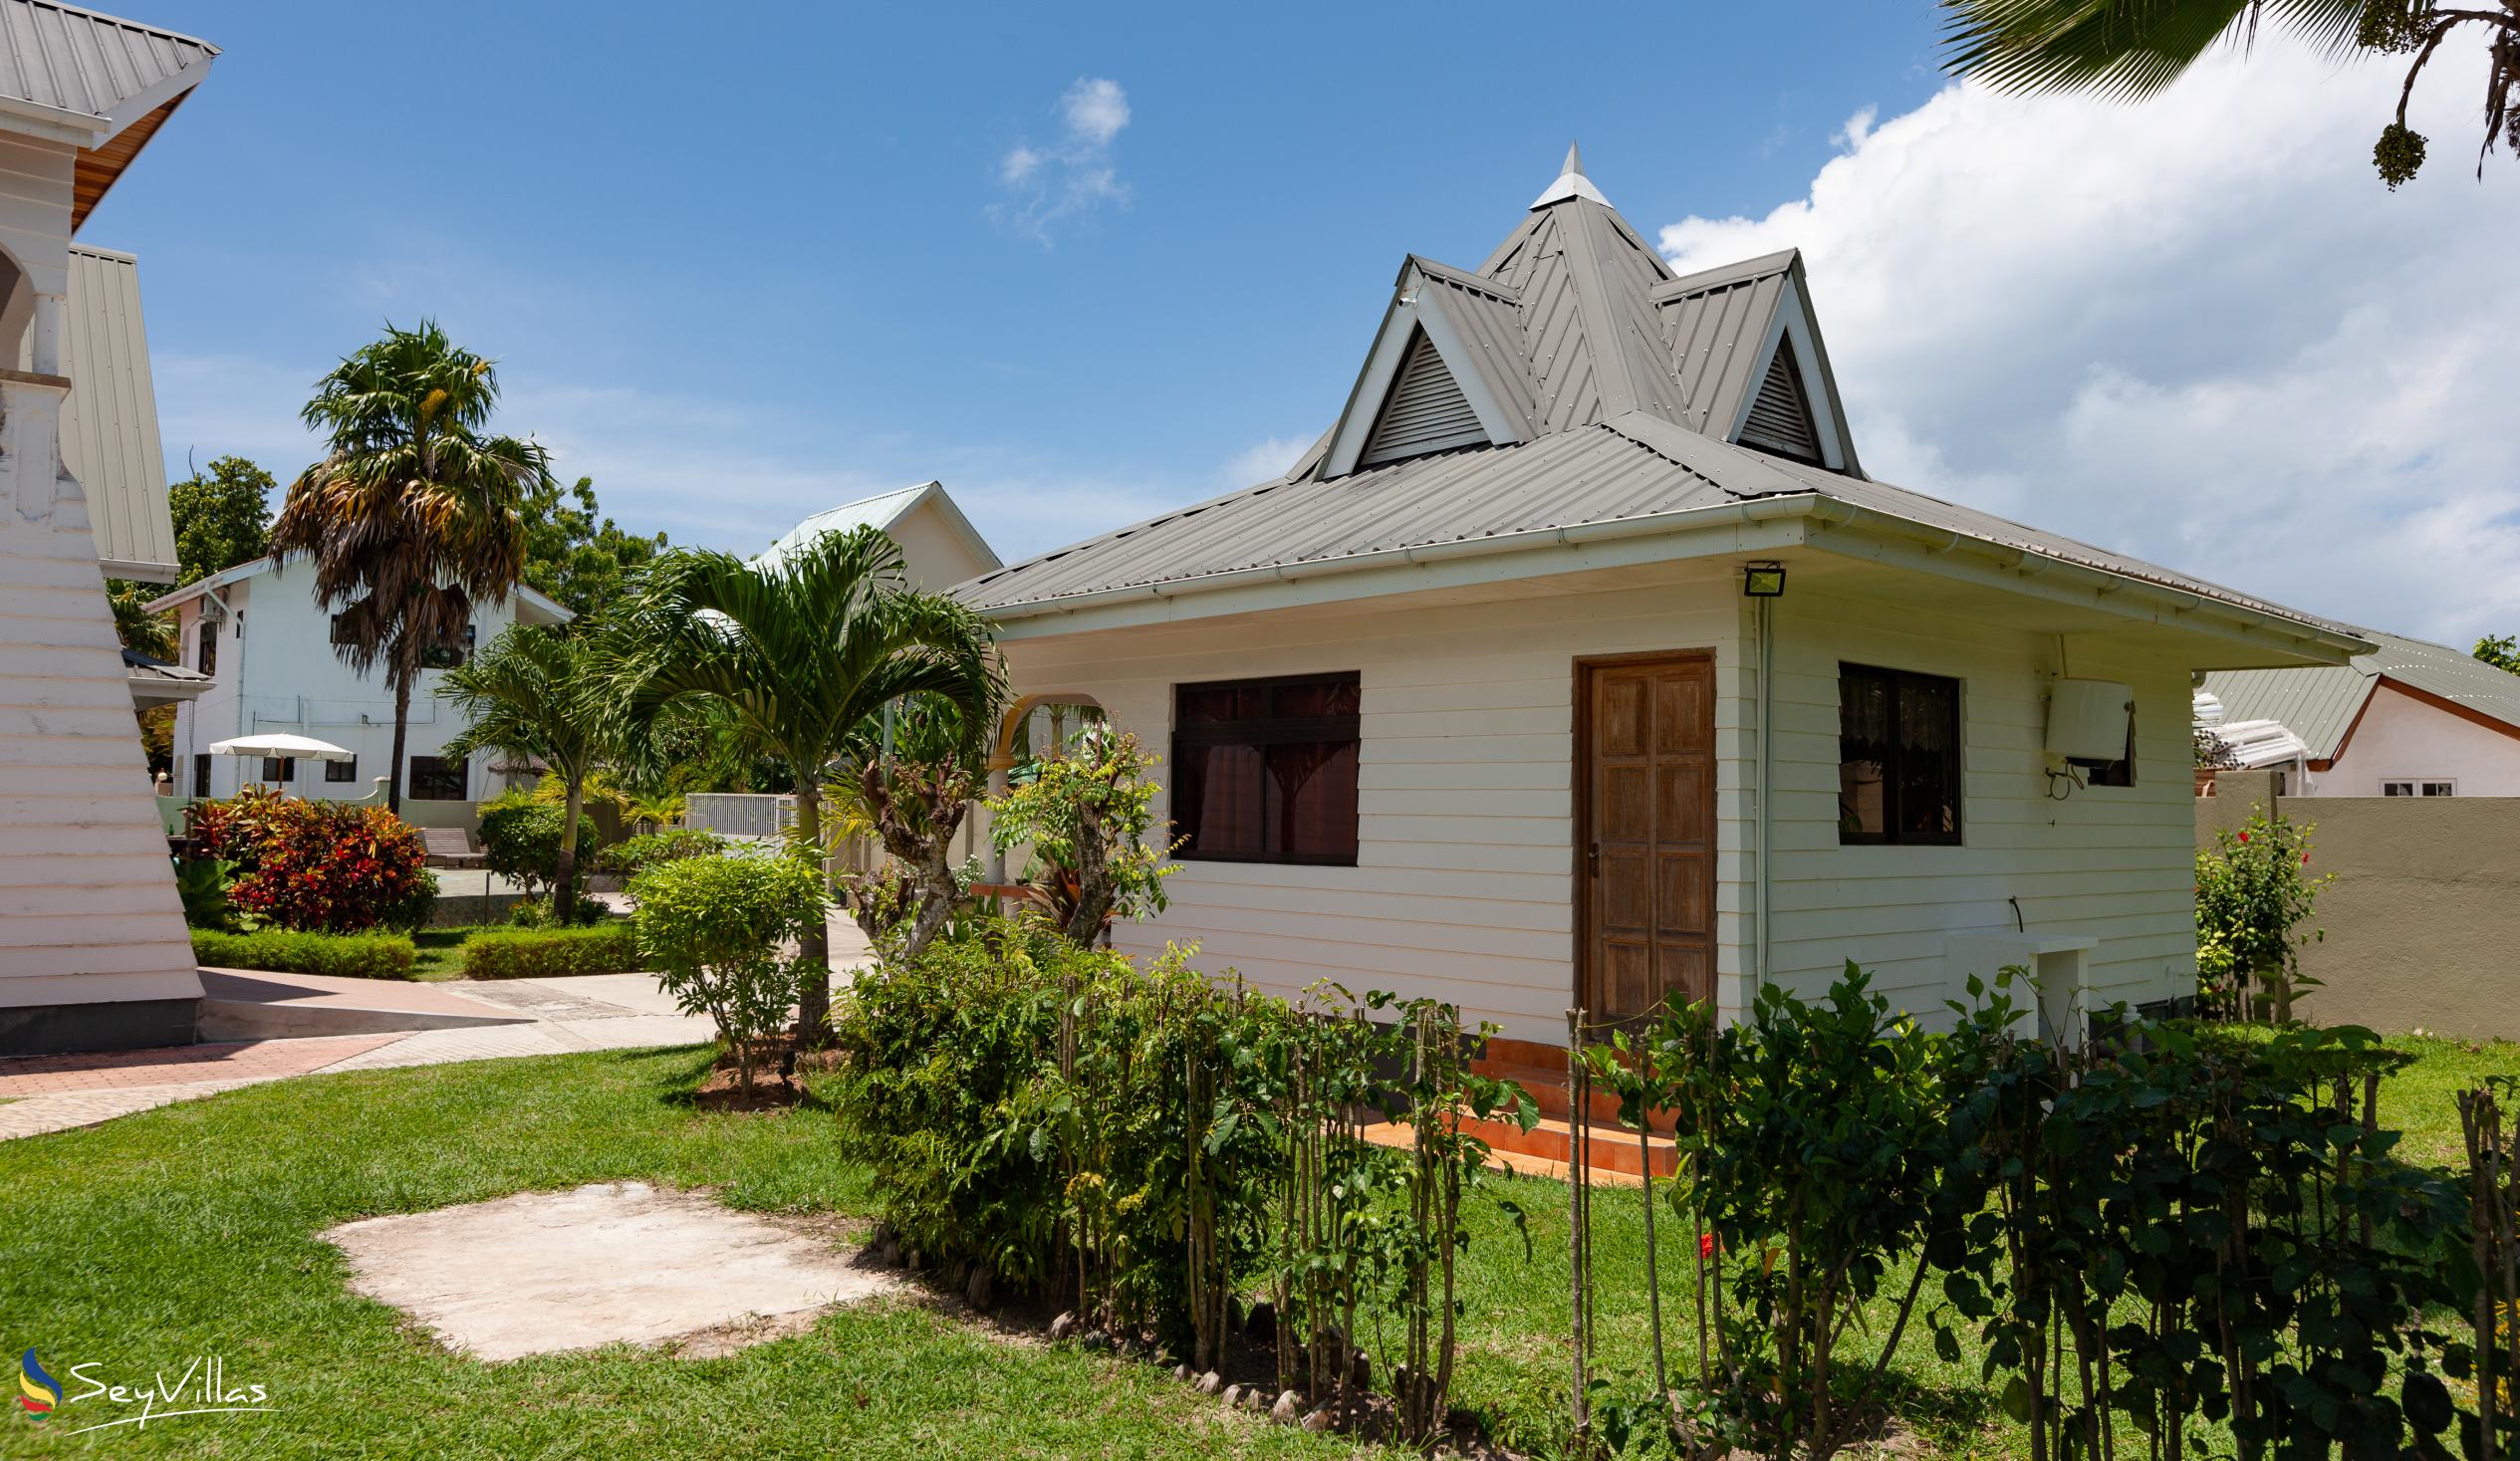 Foto 7: Villa Aya - Aussenbereich - Praslin (Seychellen)